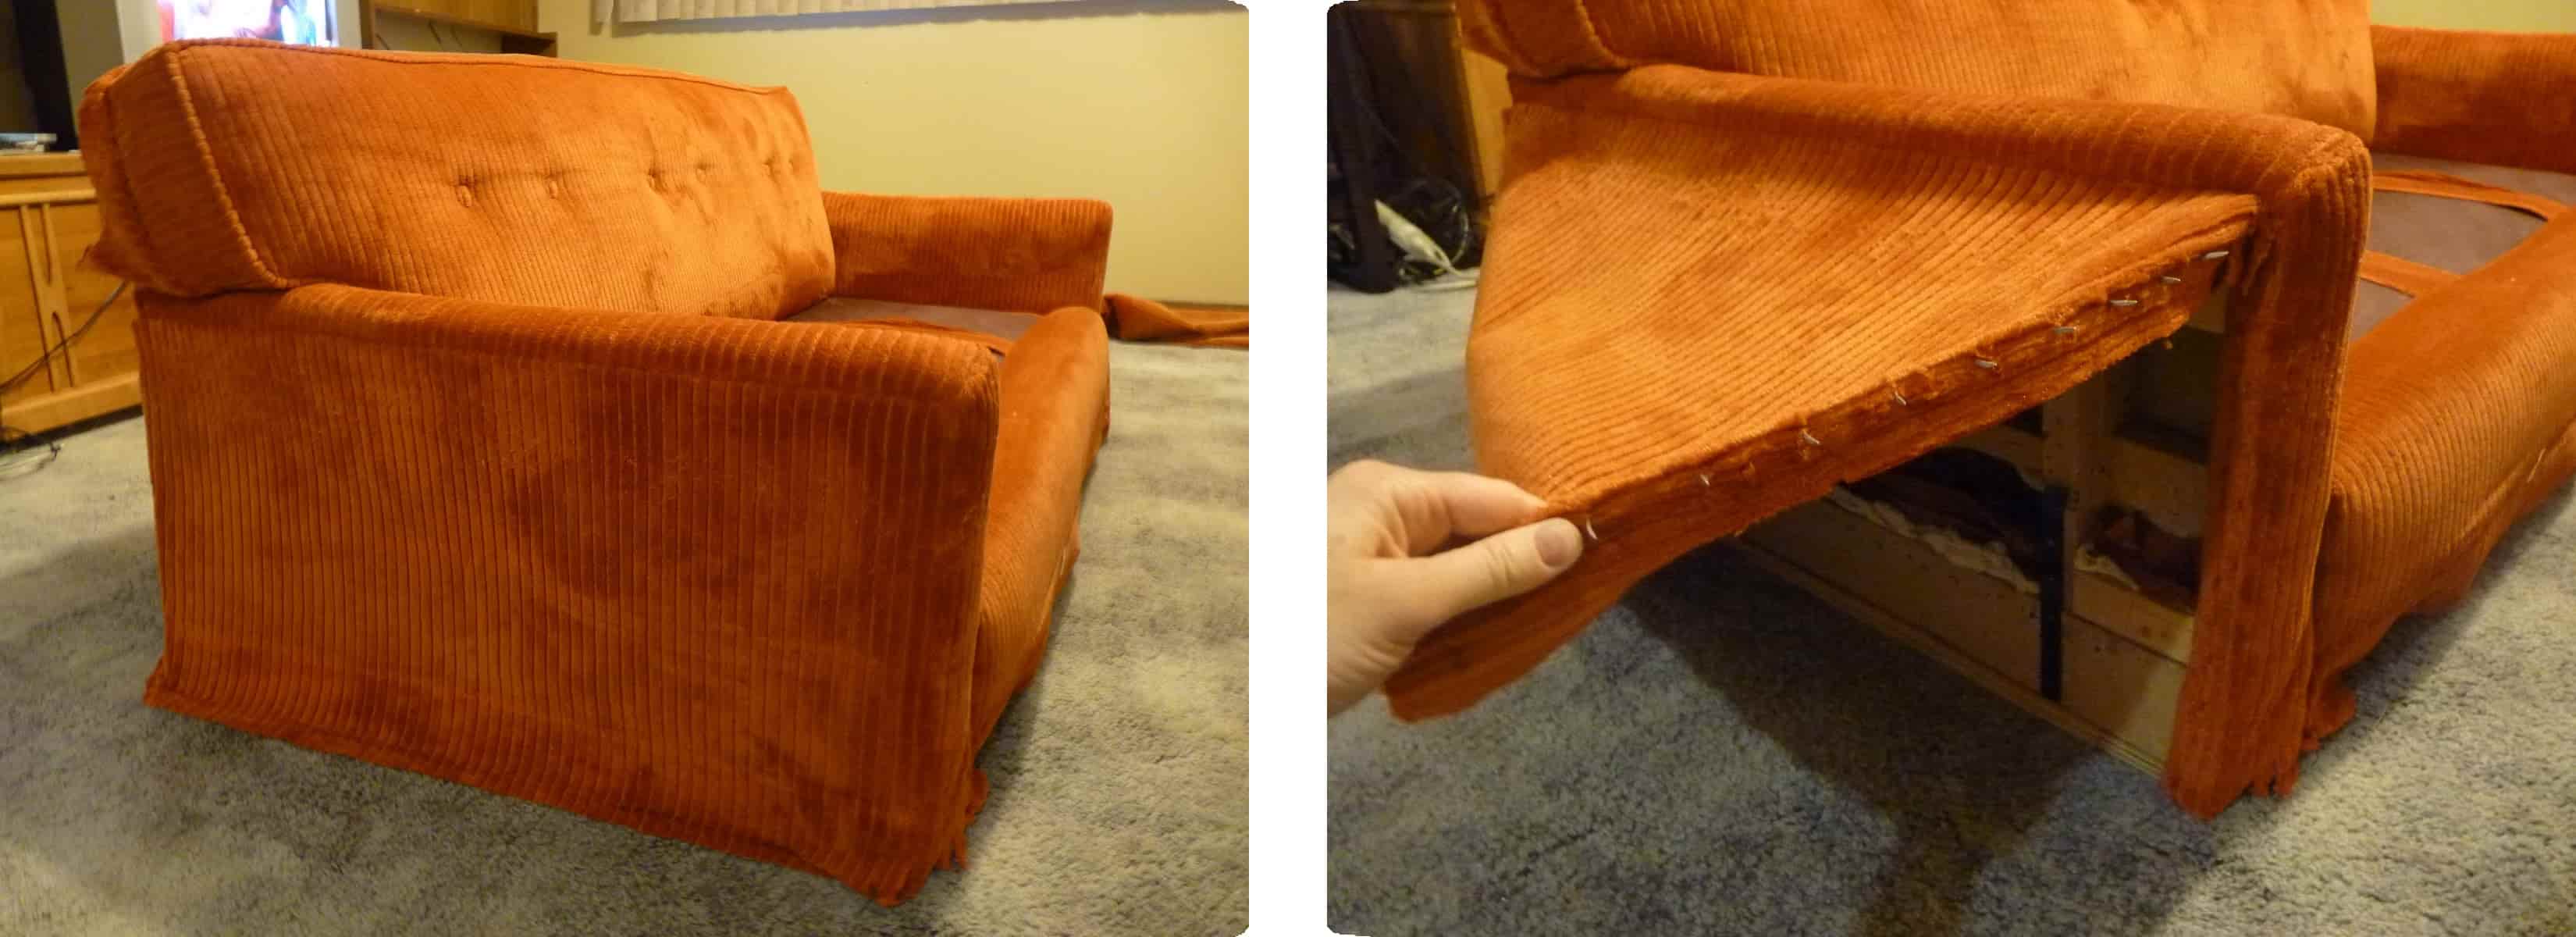 retirado de tela brazos del sillón para tapizar